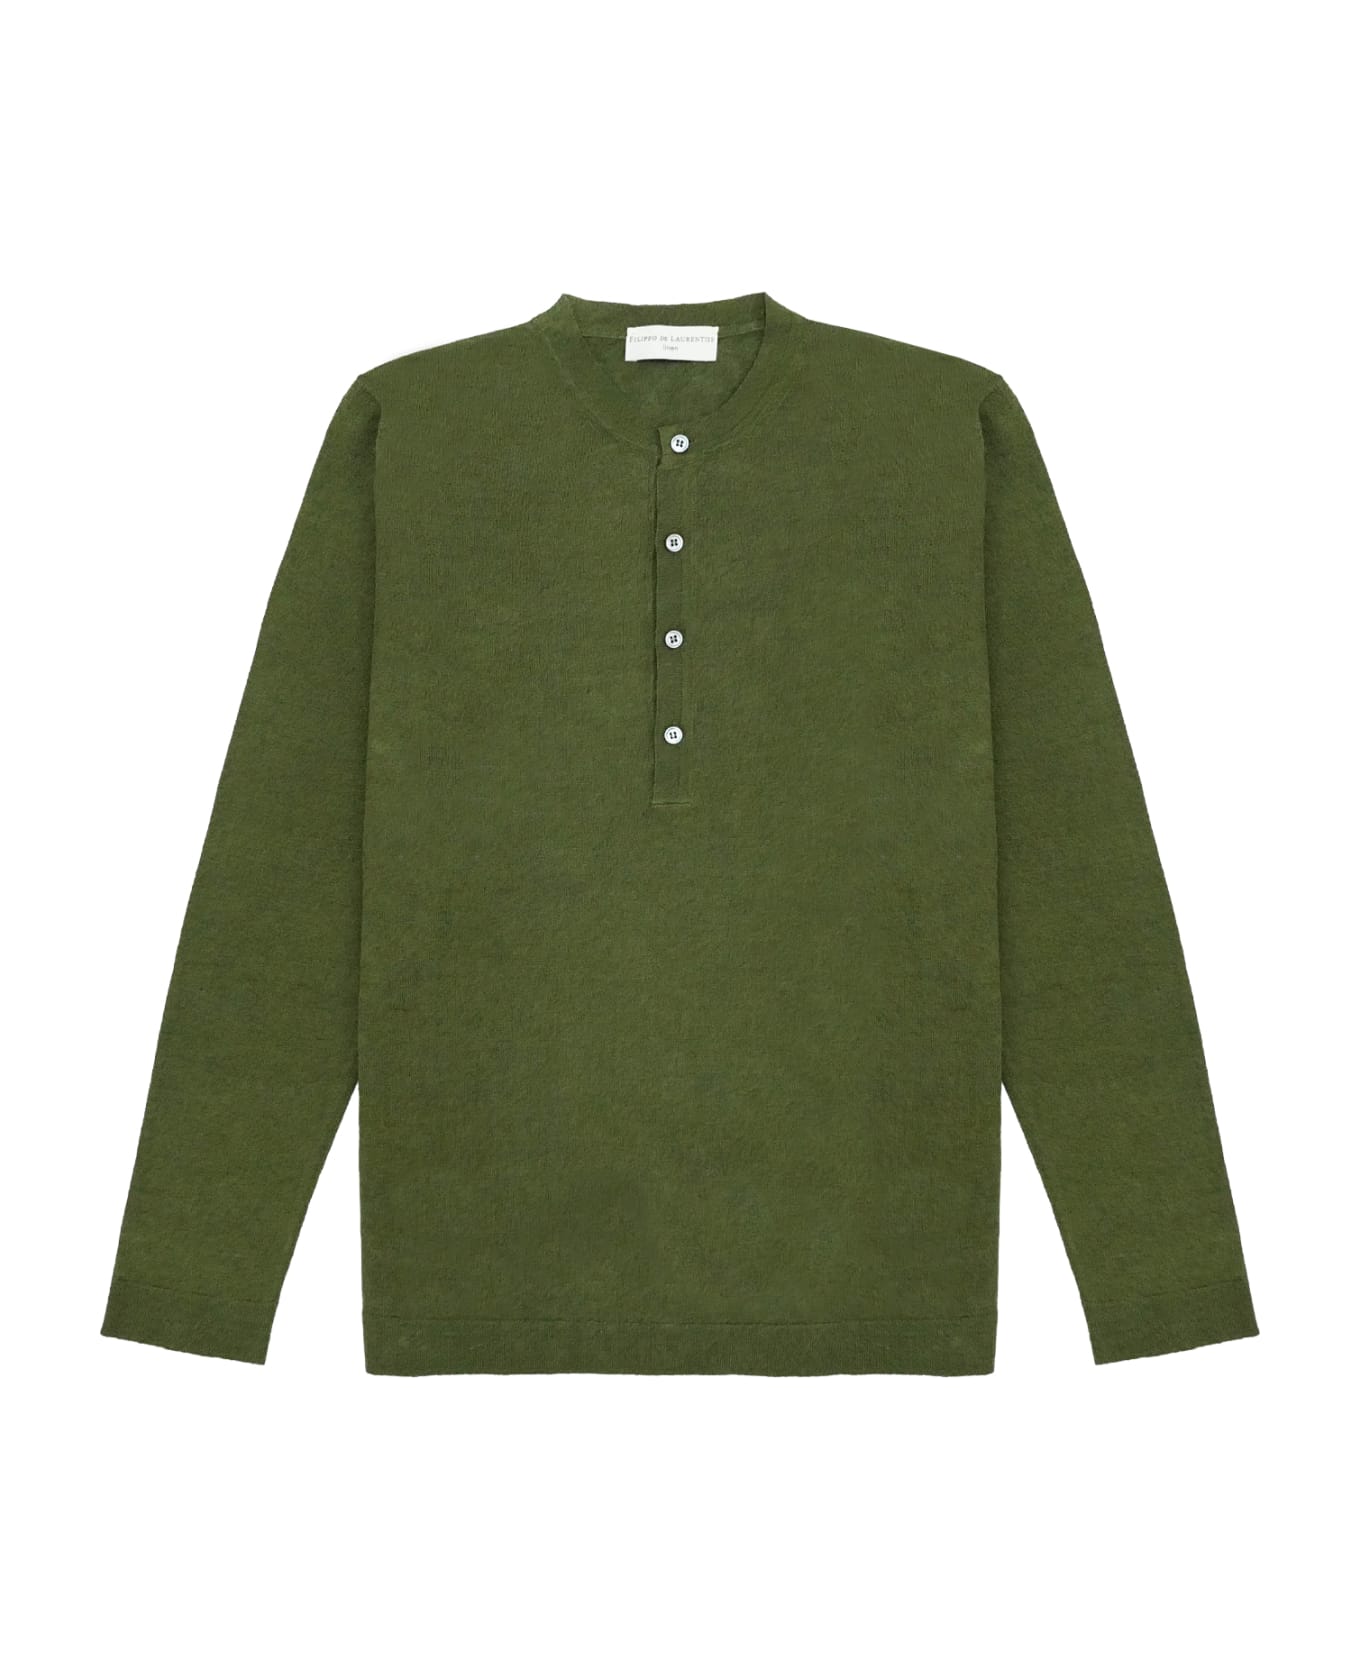 Filippo De Laurentiis Sweater - Green ニットウェア